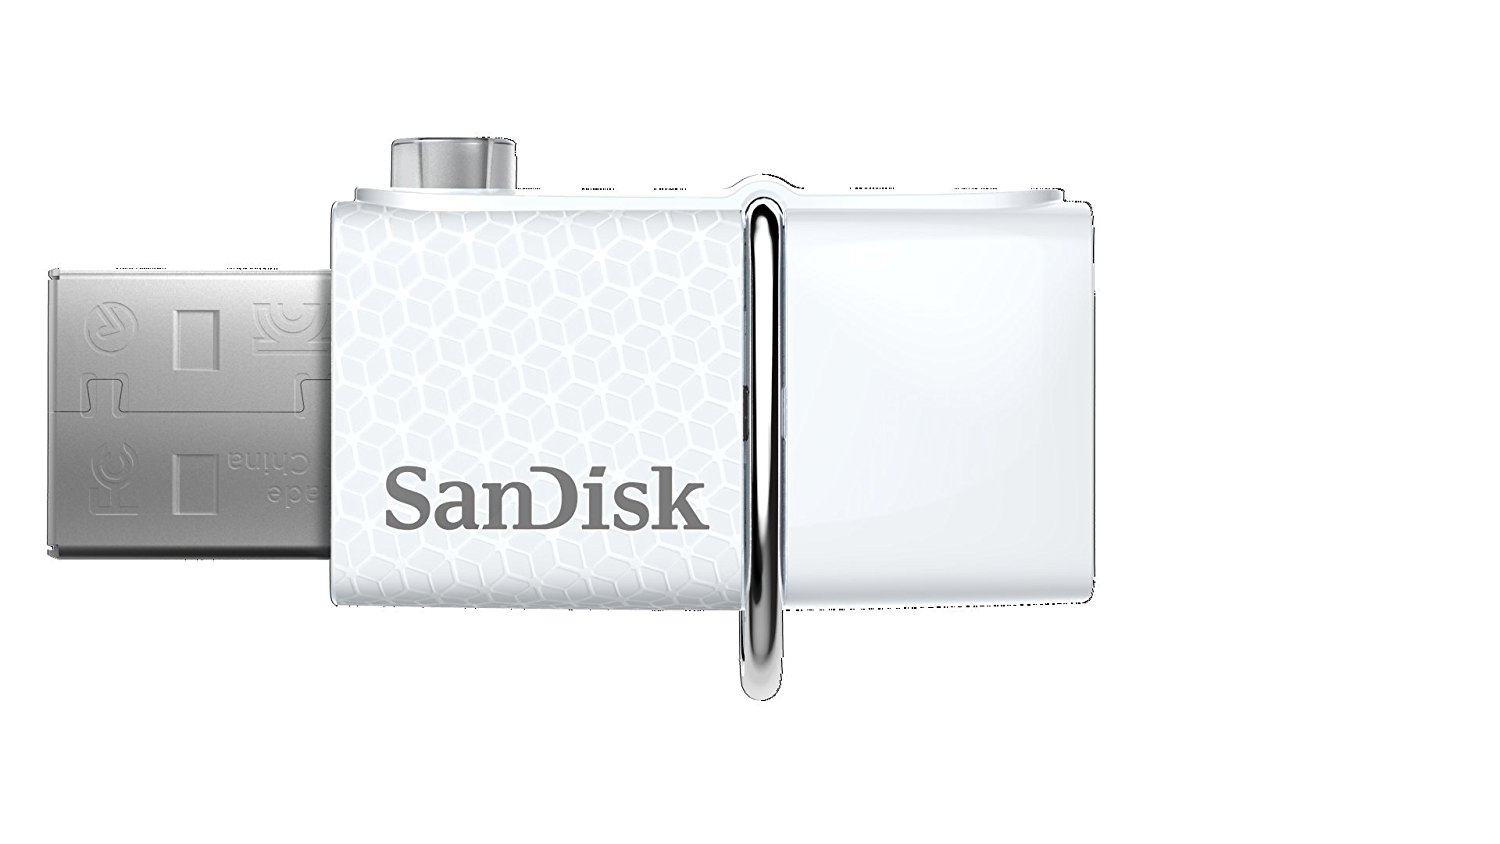 SanDisk flash drives